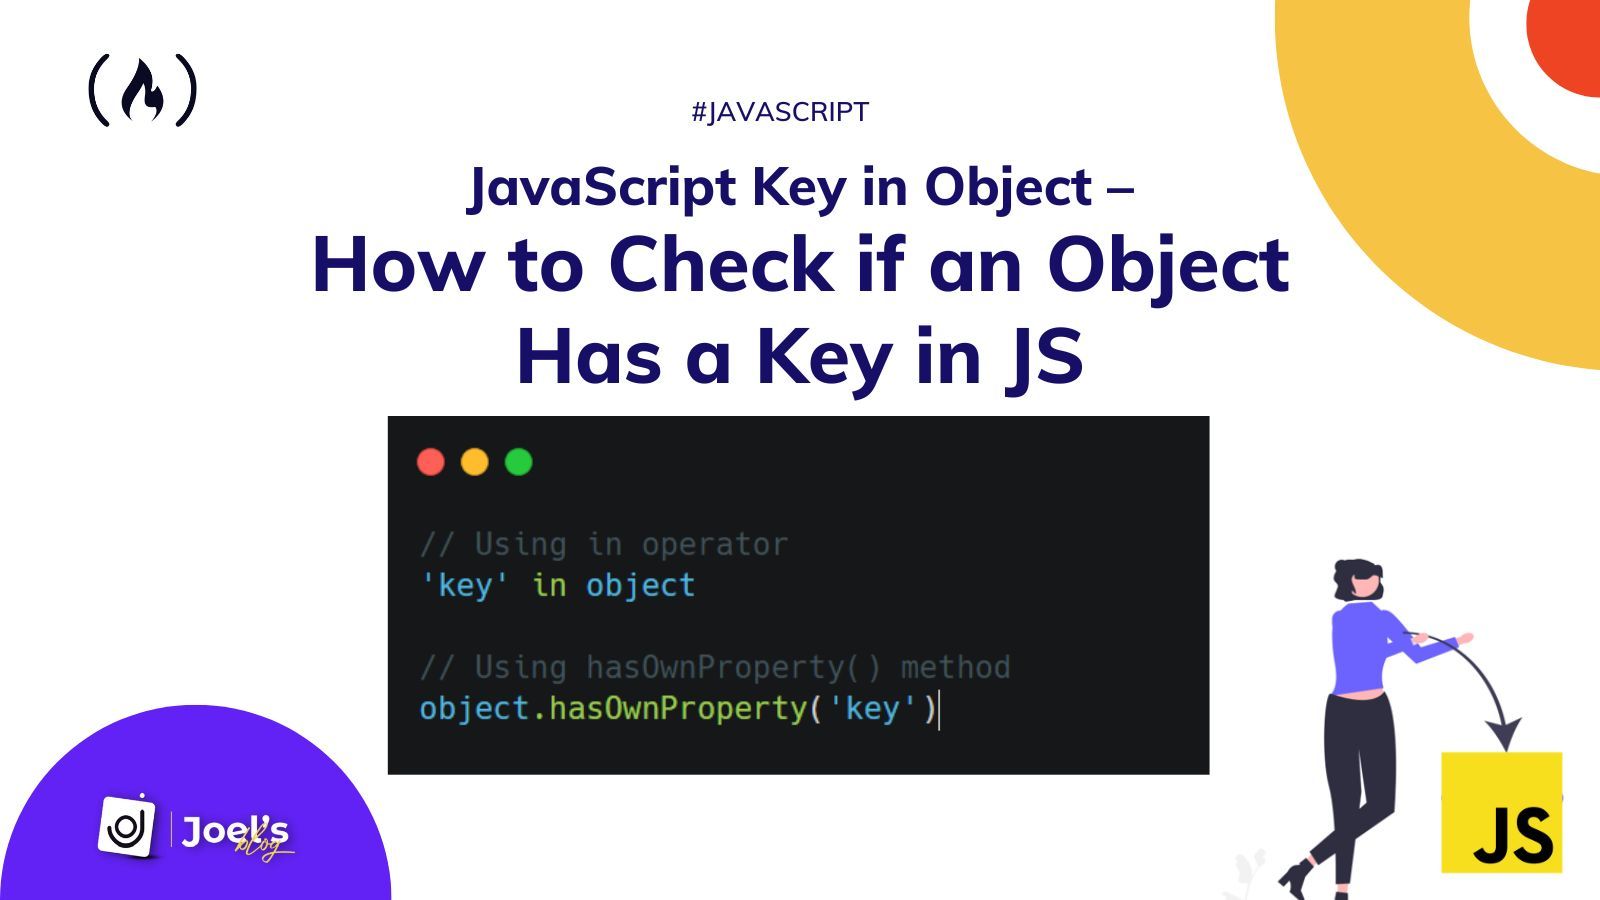 Claves de objetos en JavaScript - Cómo verificar si un objeto tiene una clave en JS